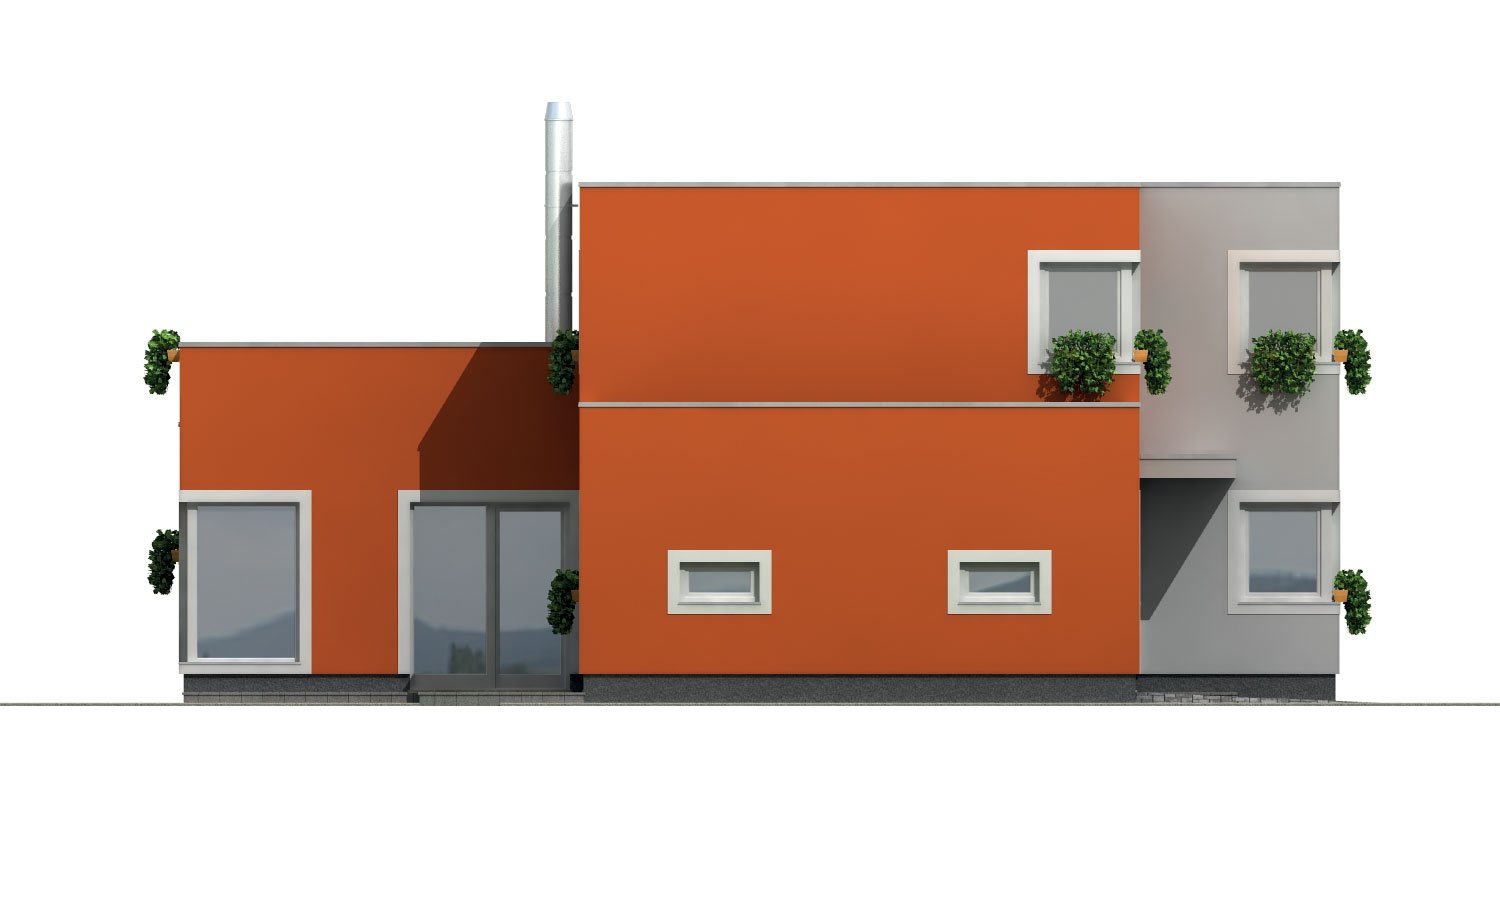 Pohľad 2. - Prostorný rodinný dům s garáží a pokojem v přízemí.